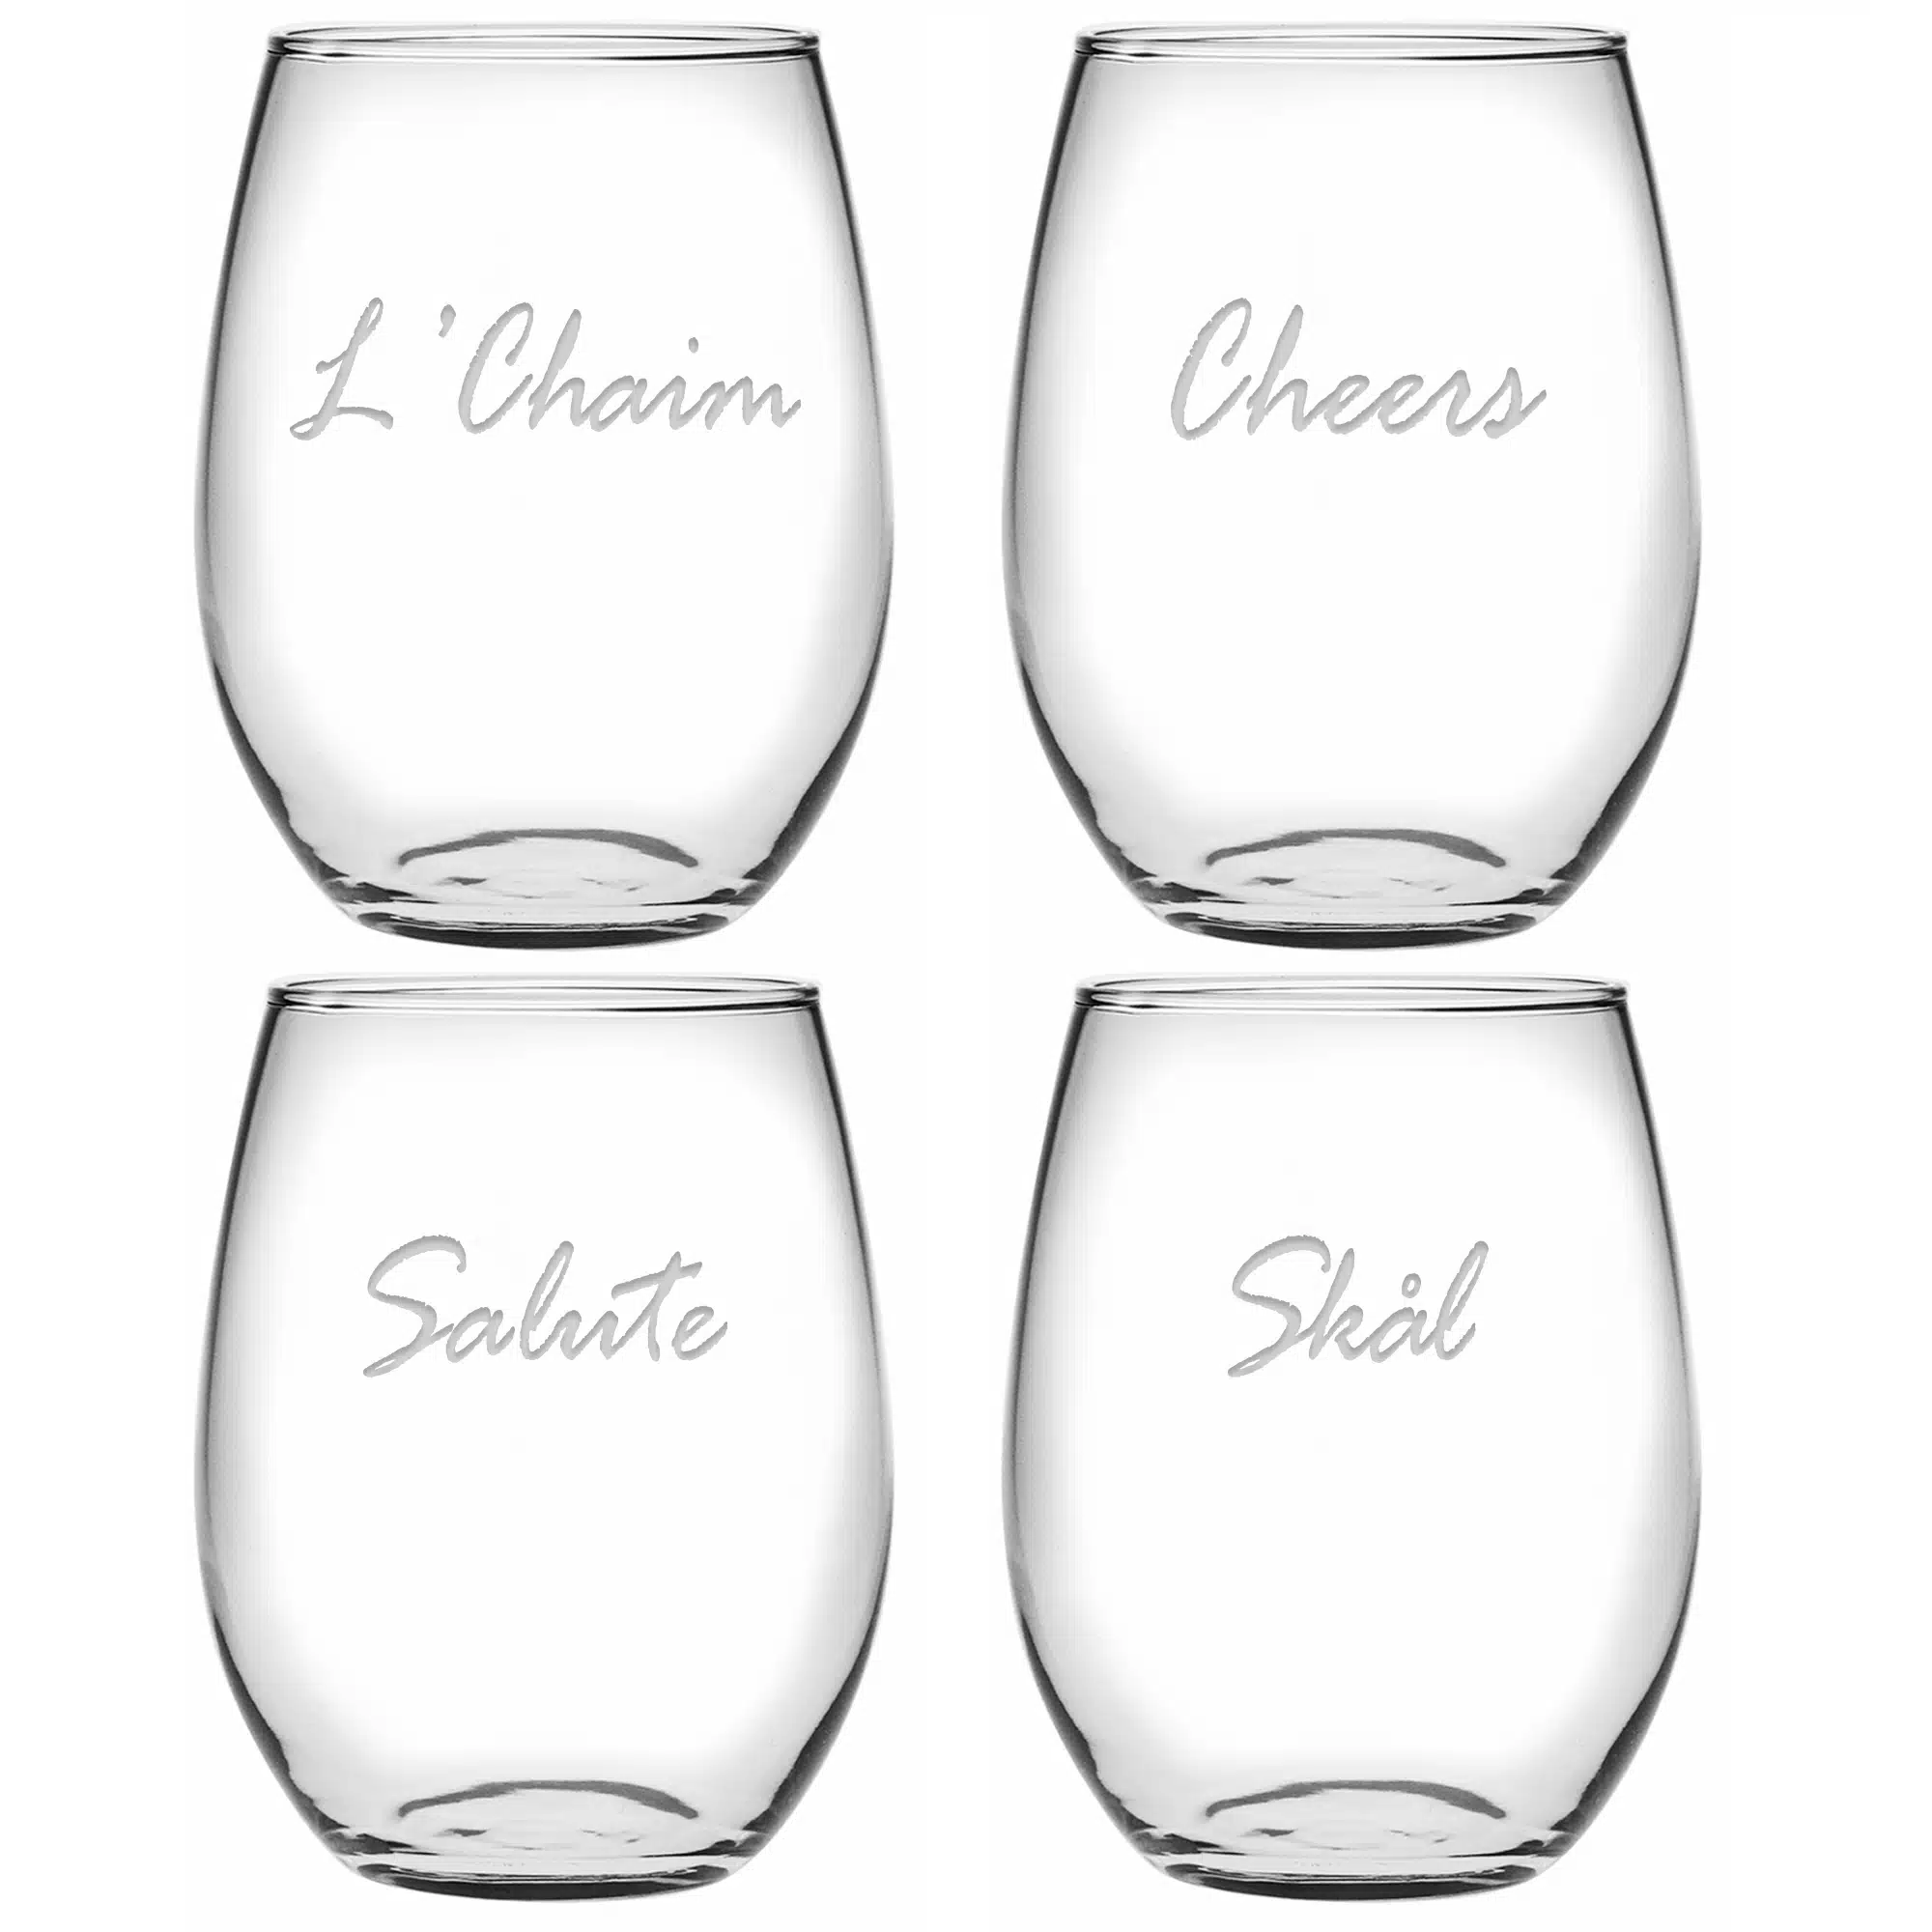 Cheers Around The World - Stemless Wine Glass - Set of 4